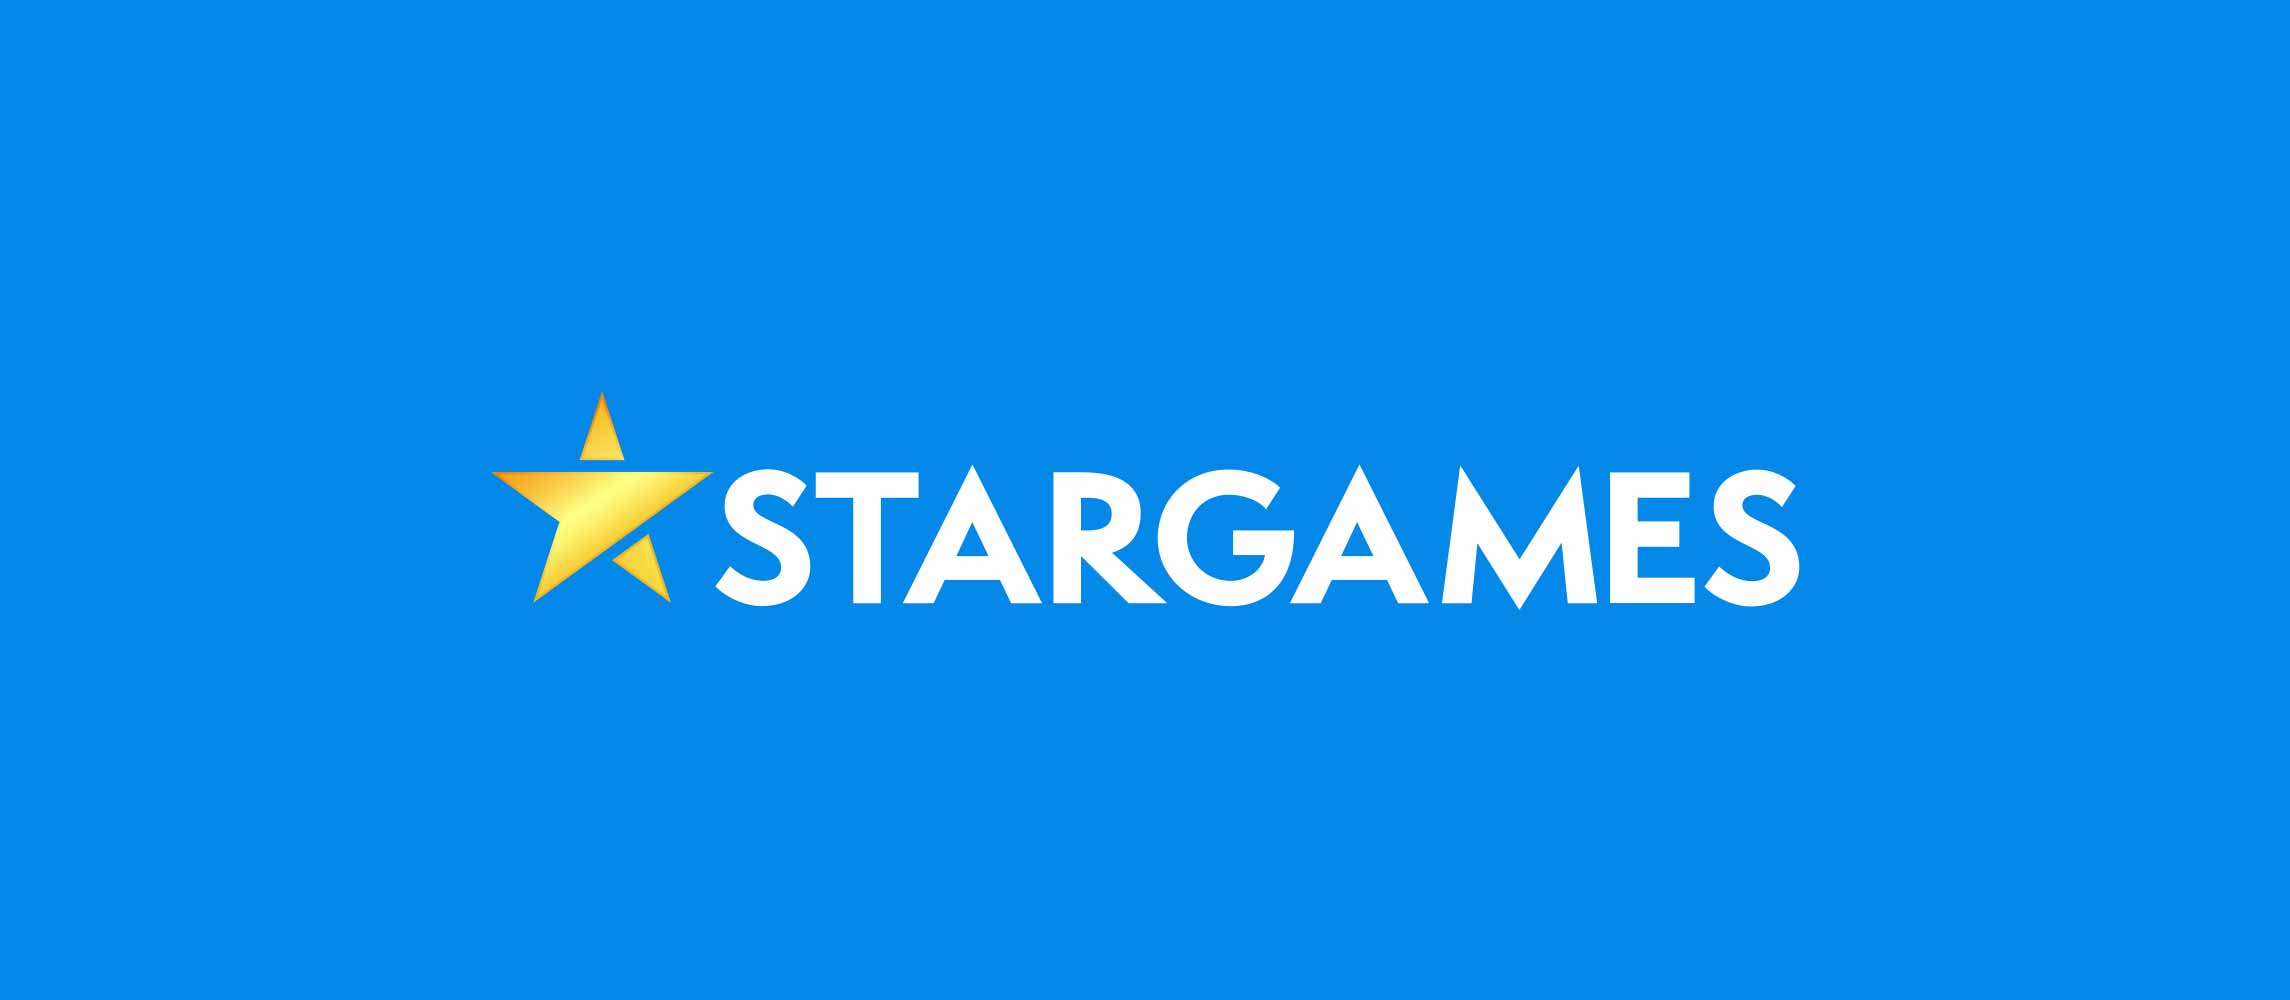 Recenzja popularnych gier kasynowych Star Games autorstwa M. Rabszskiego